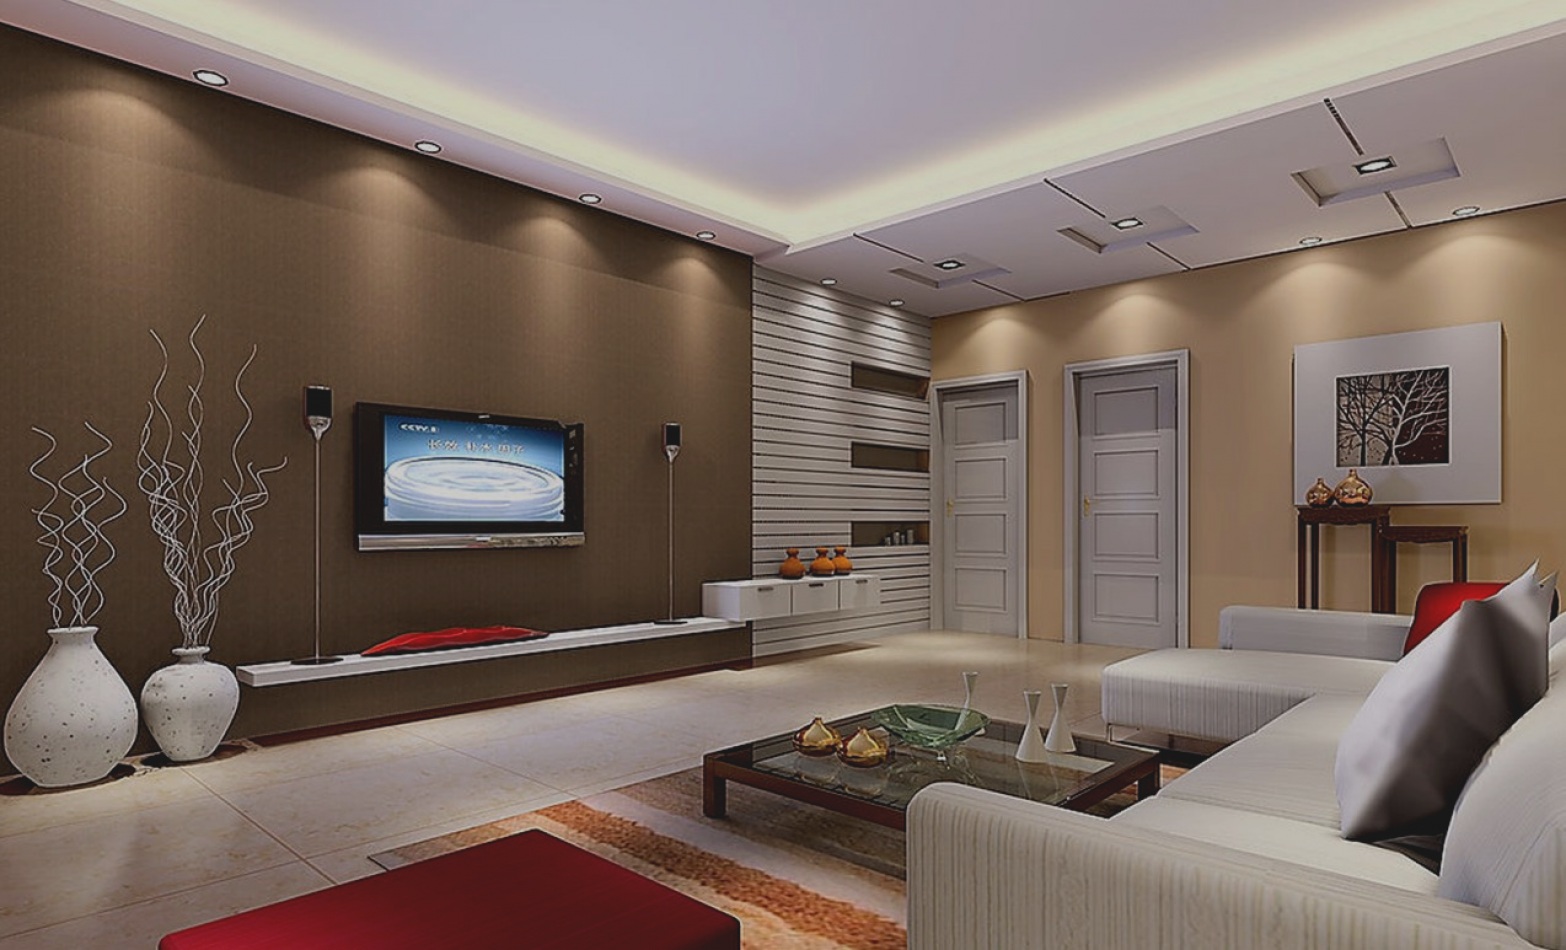 Hall living room. Гостиная в современном стиле. Дизайнерские решения для гостиной. Стильный интерьер гостиной. Освещение в интерьере гостиной.